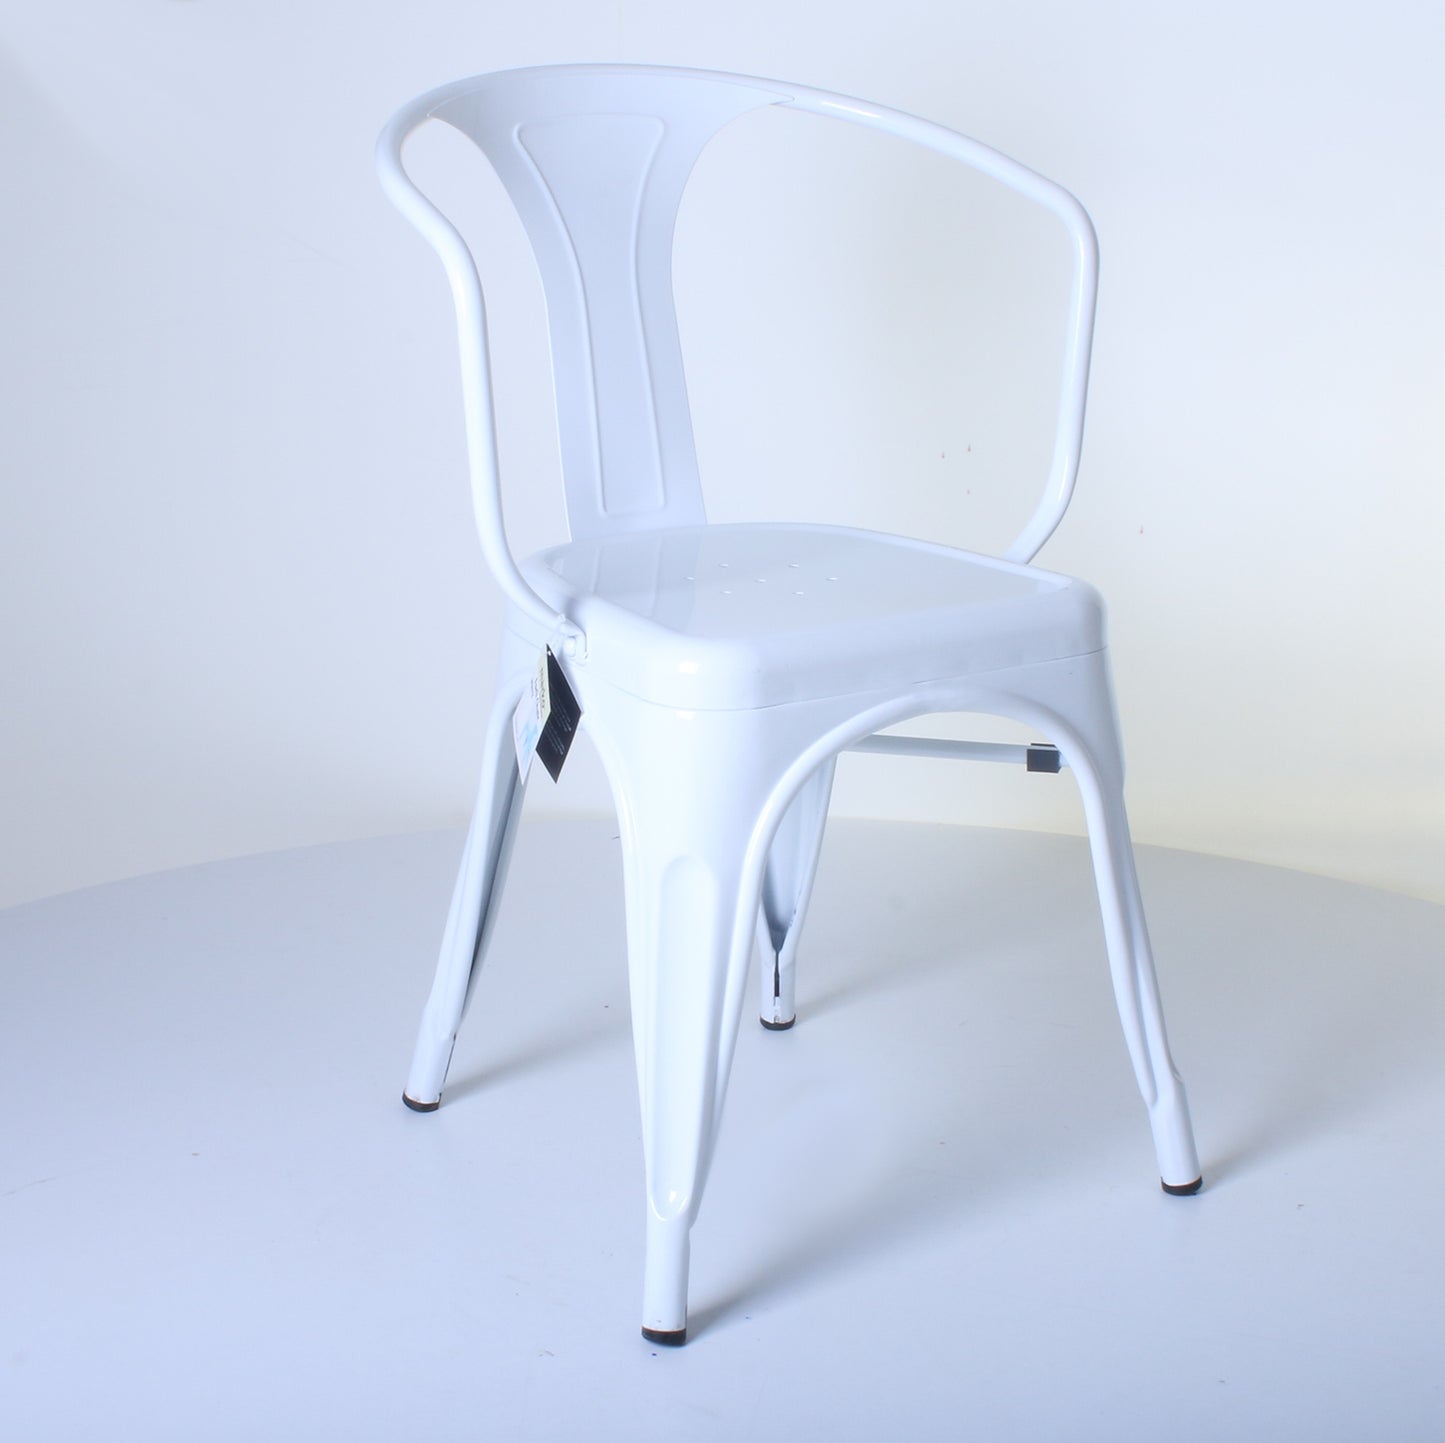 5PC Enna Table Forli & Siena Chairs Set - White